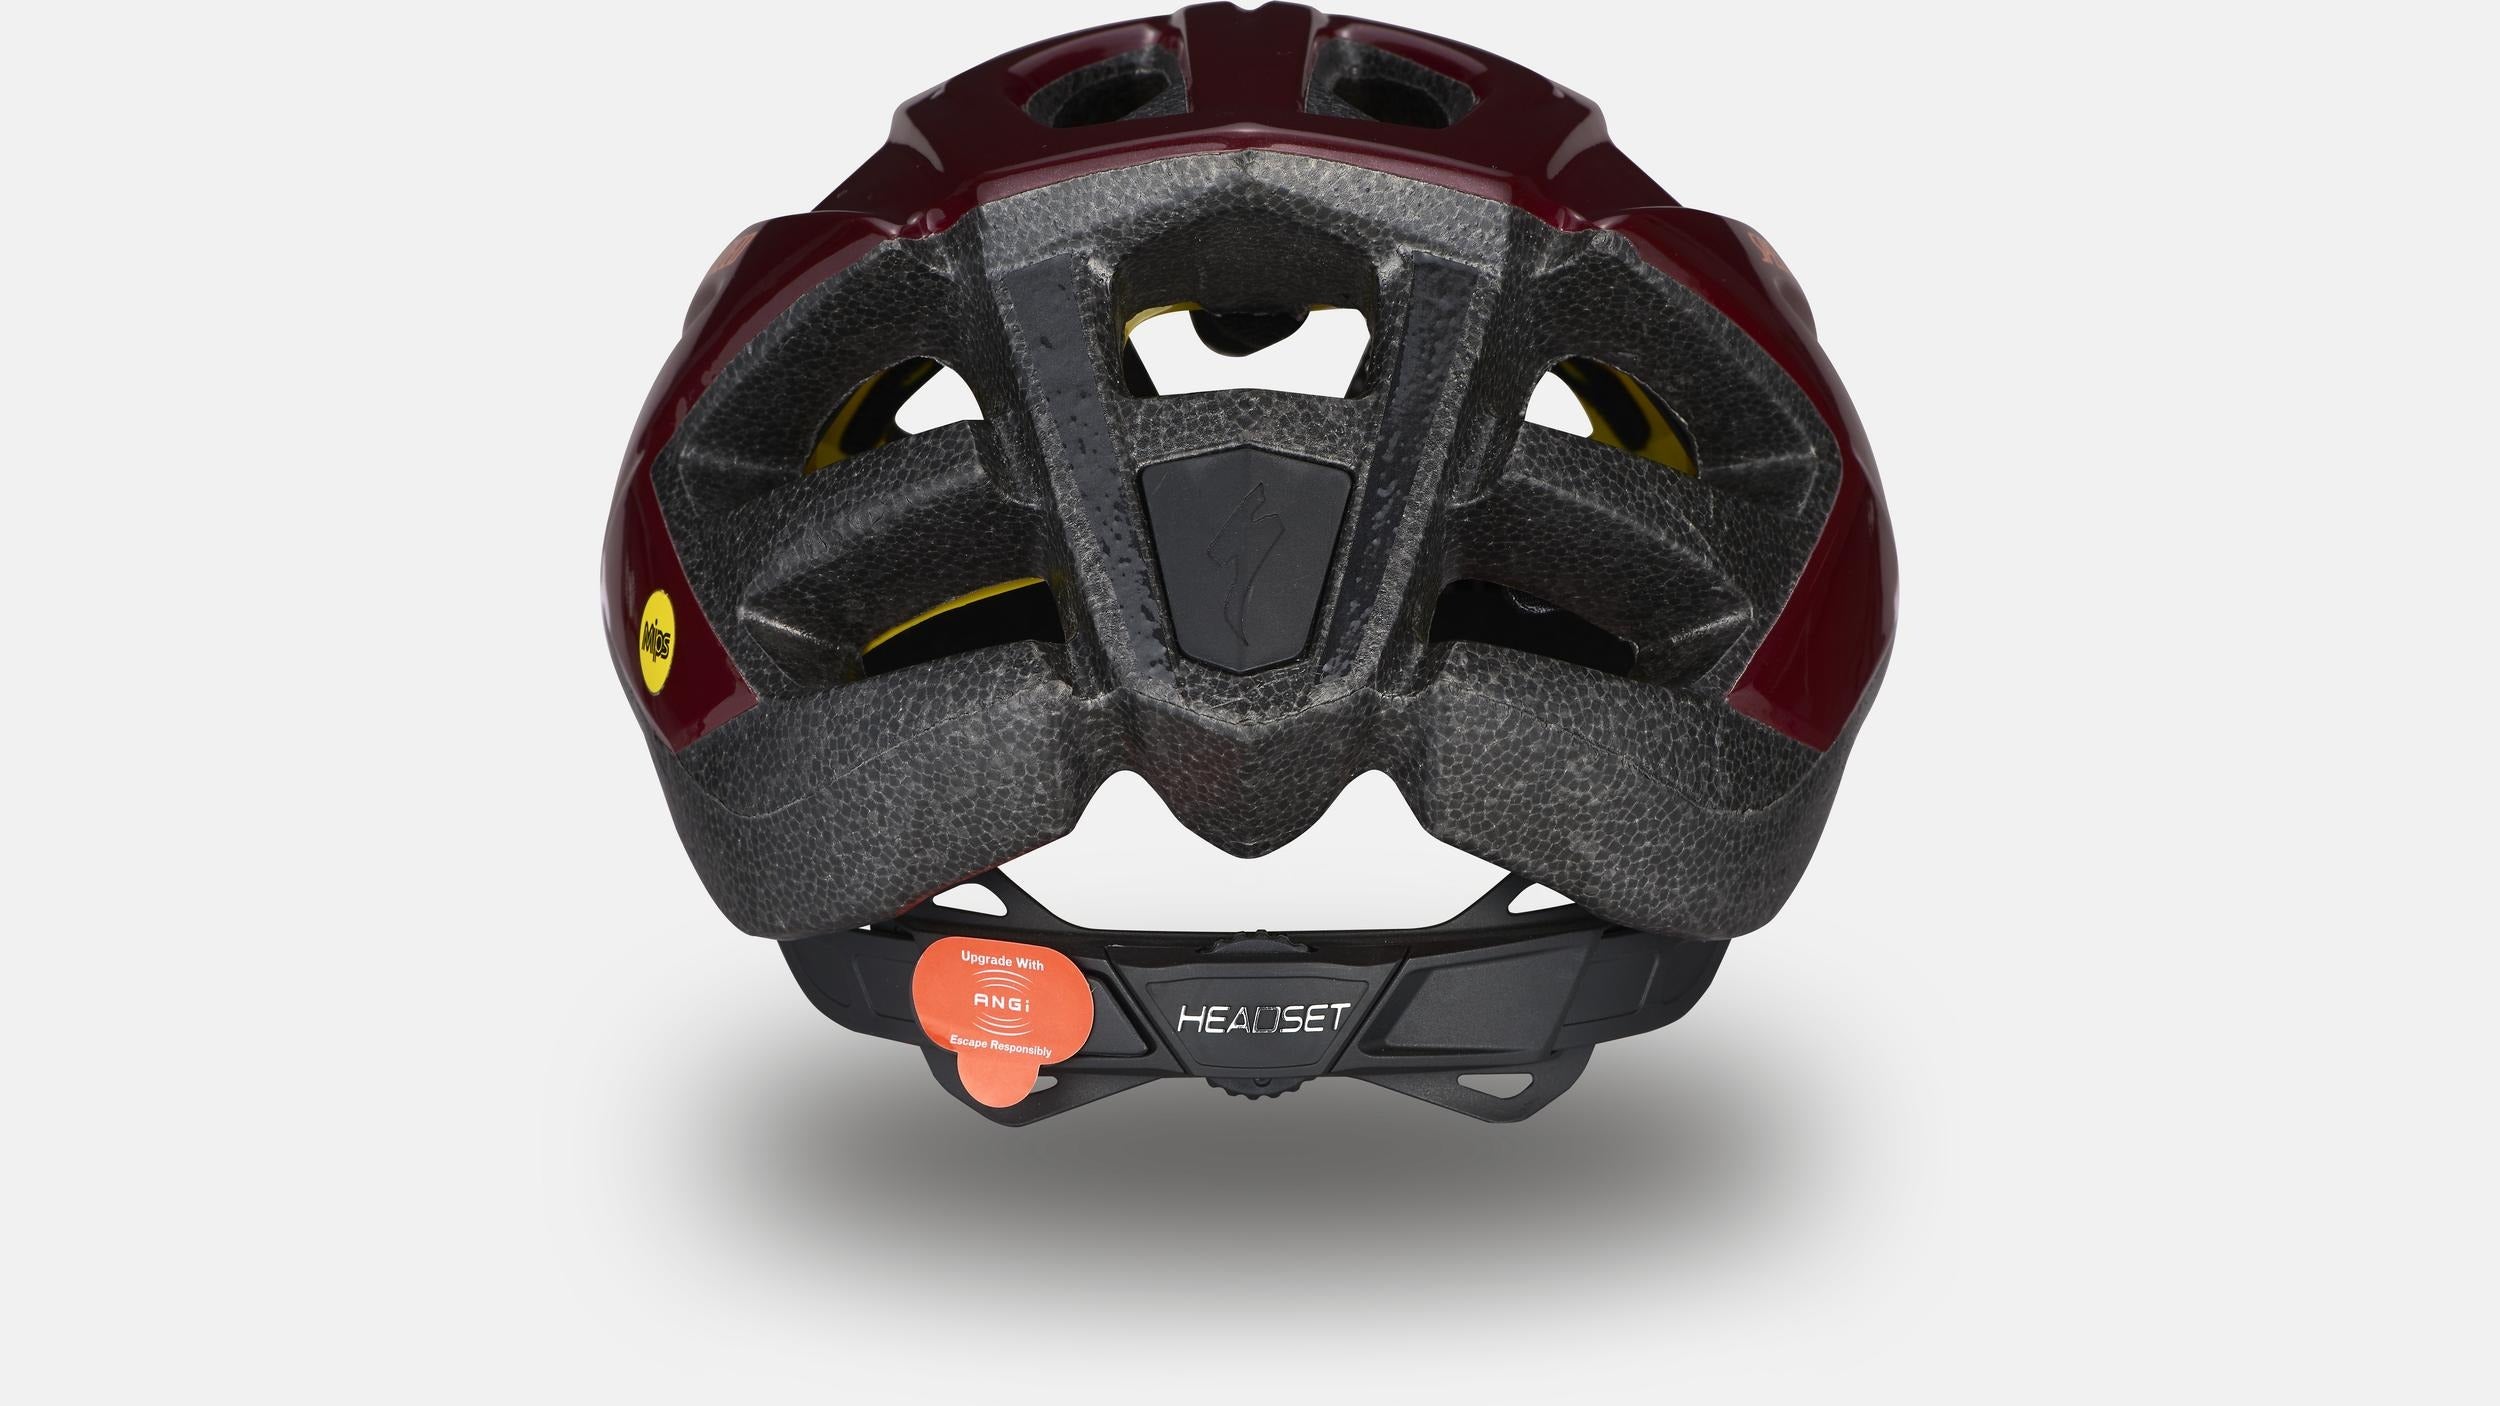 Specialized Chamonix 2 Bike Helmet Maroon